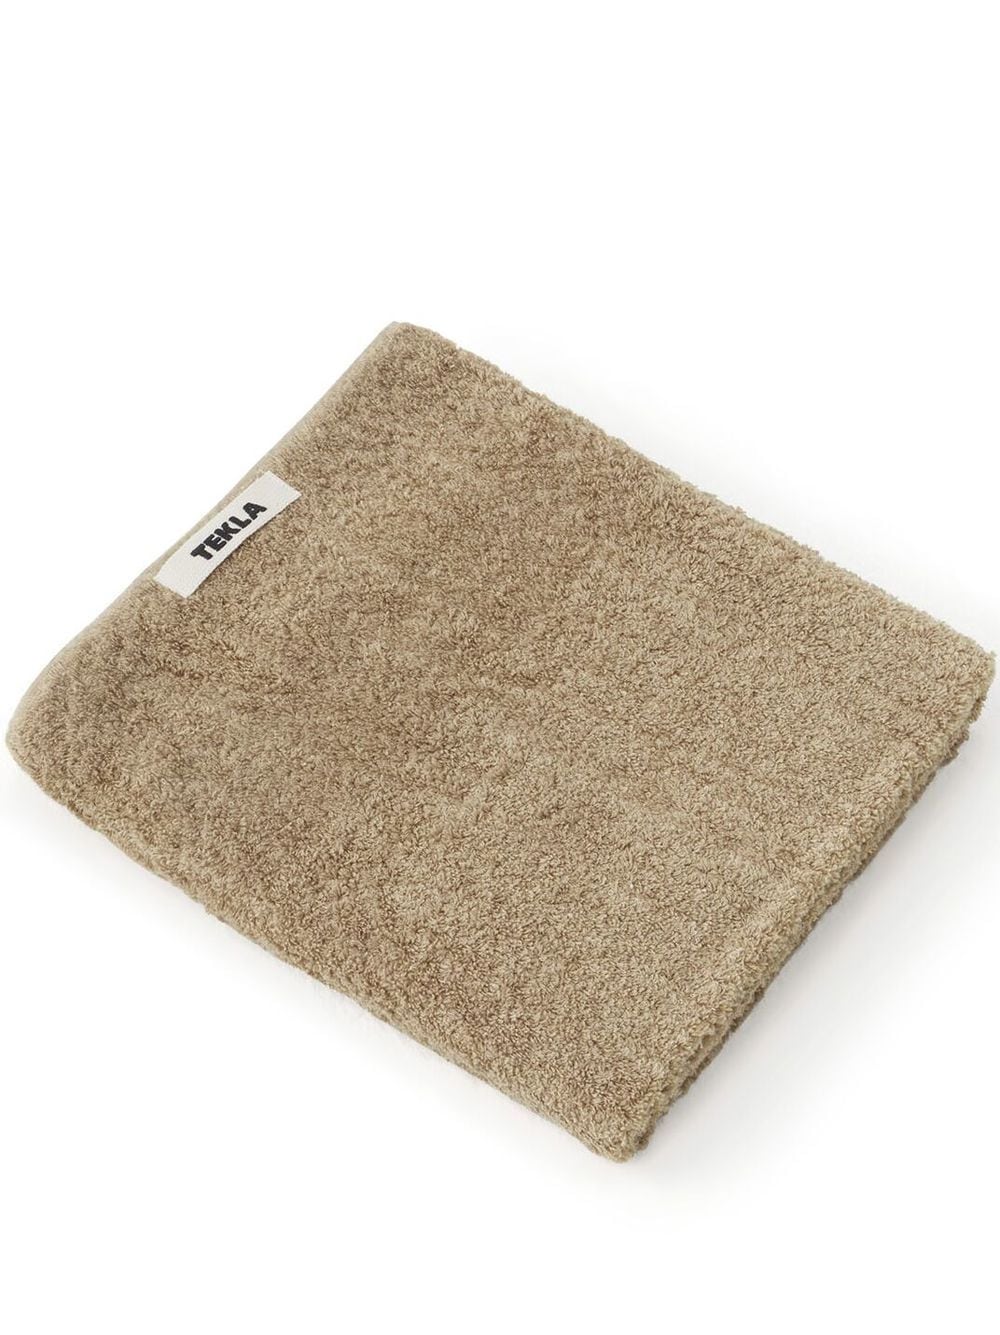 TEKLA terry-cloth bath towel - Neutrals von TEKLA